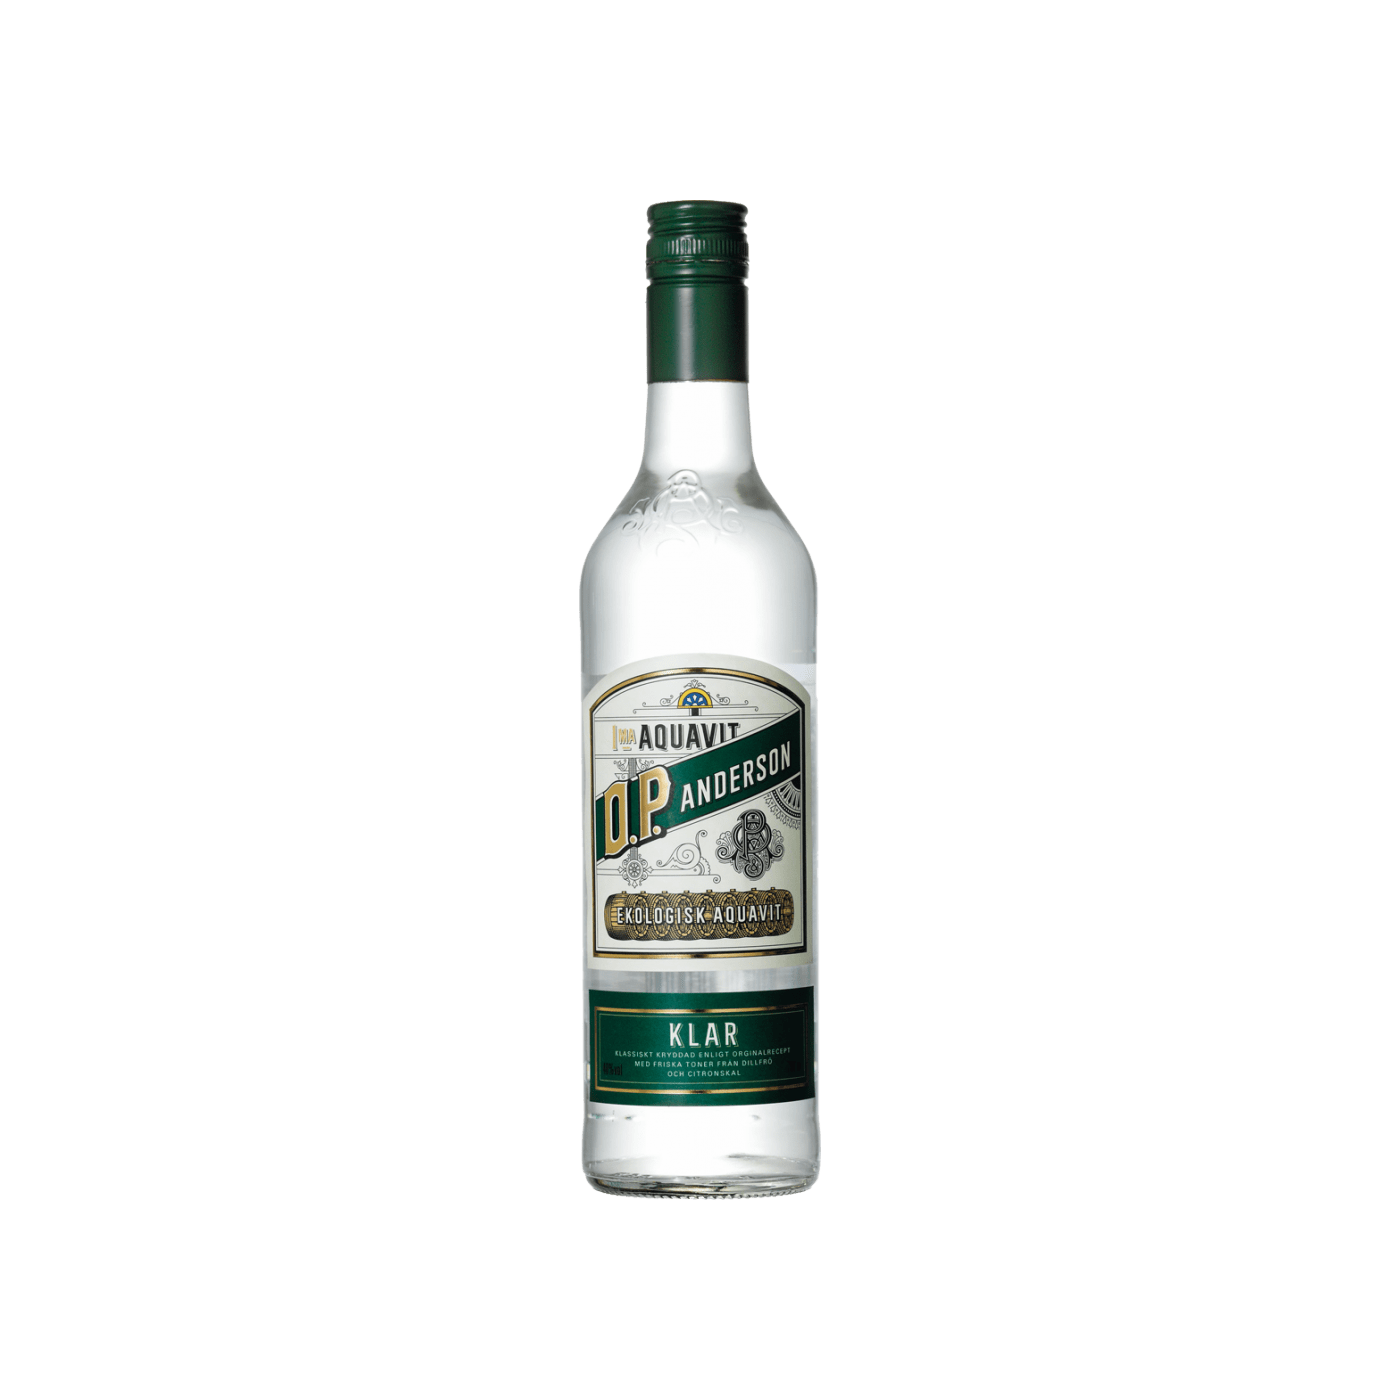 O.P. Anderson Klar Aquavit 40% 70 cl | Nordic Spirits | Nordic Spirits